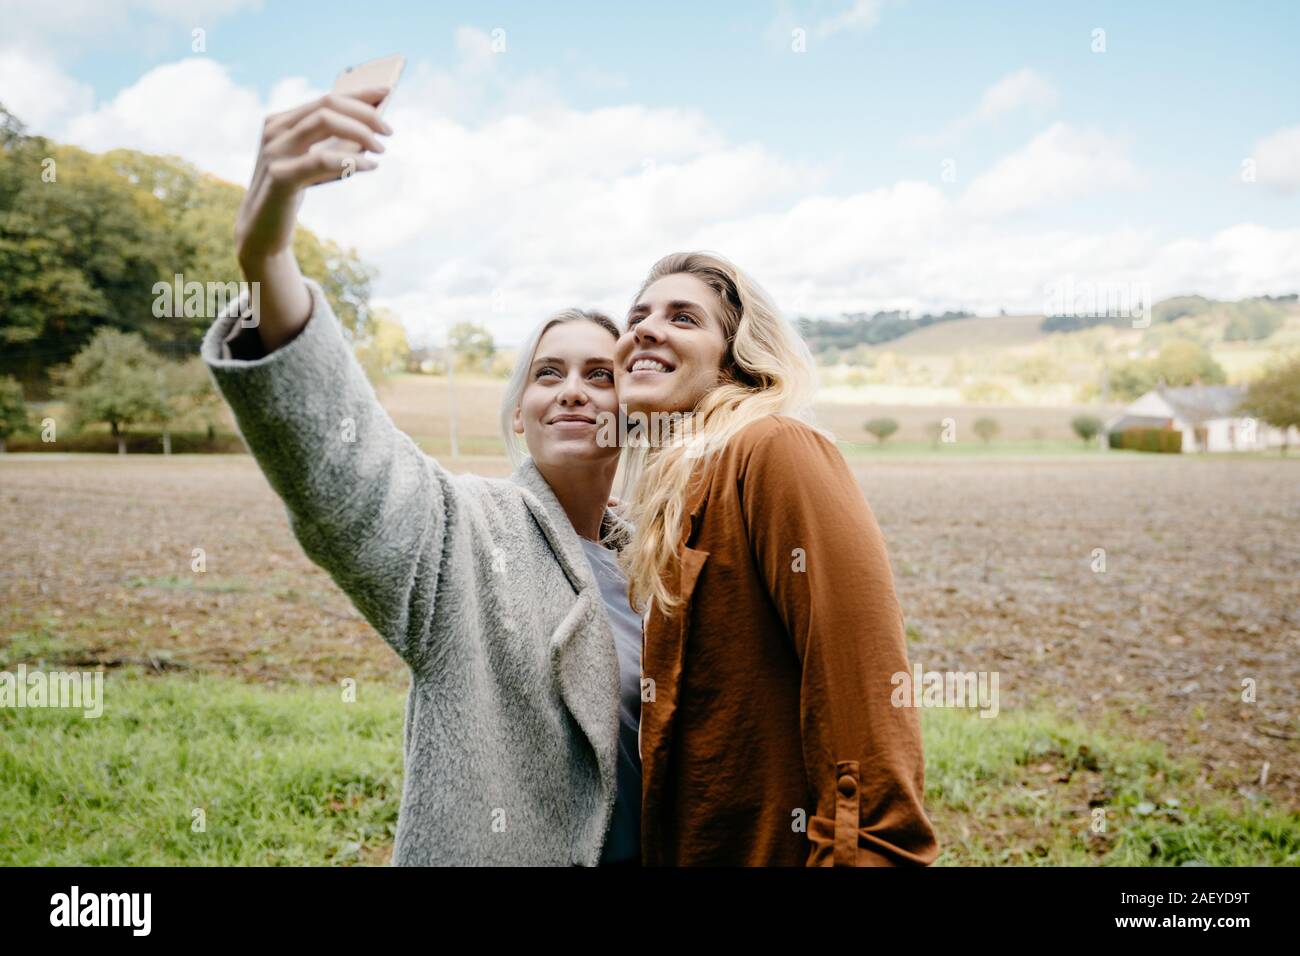 Zwei weibliche Freunde eine selfie in einem französischen Landschaft Landschaft Stockfoto